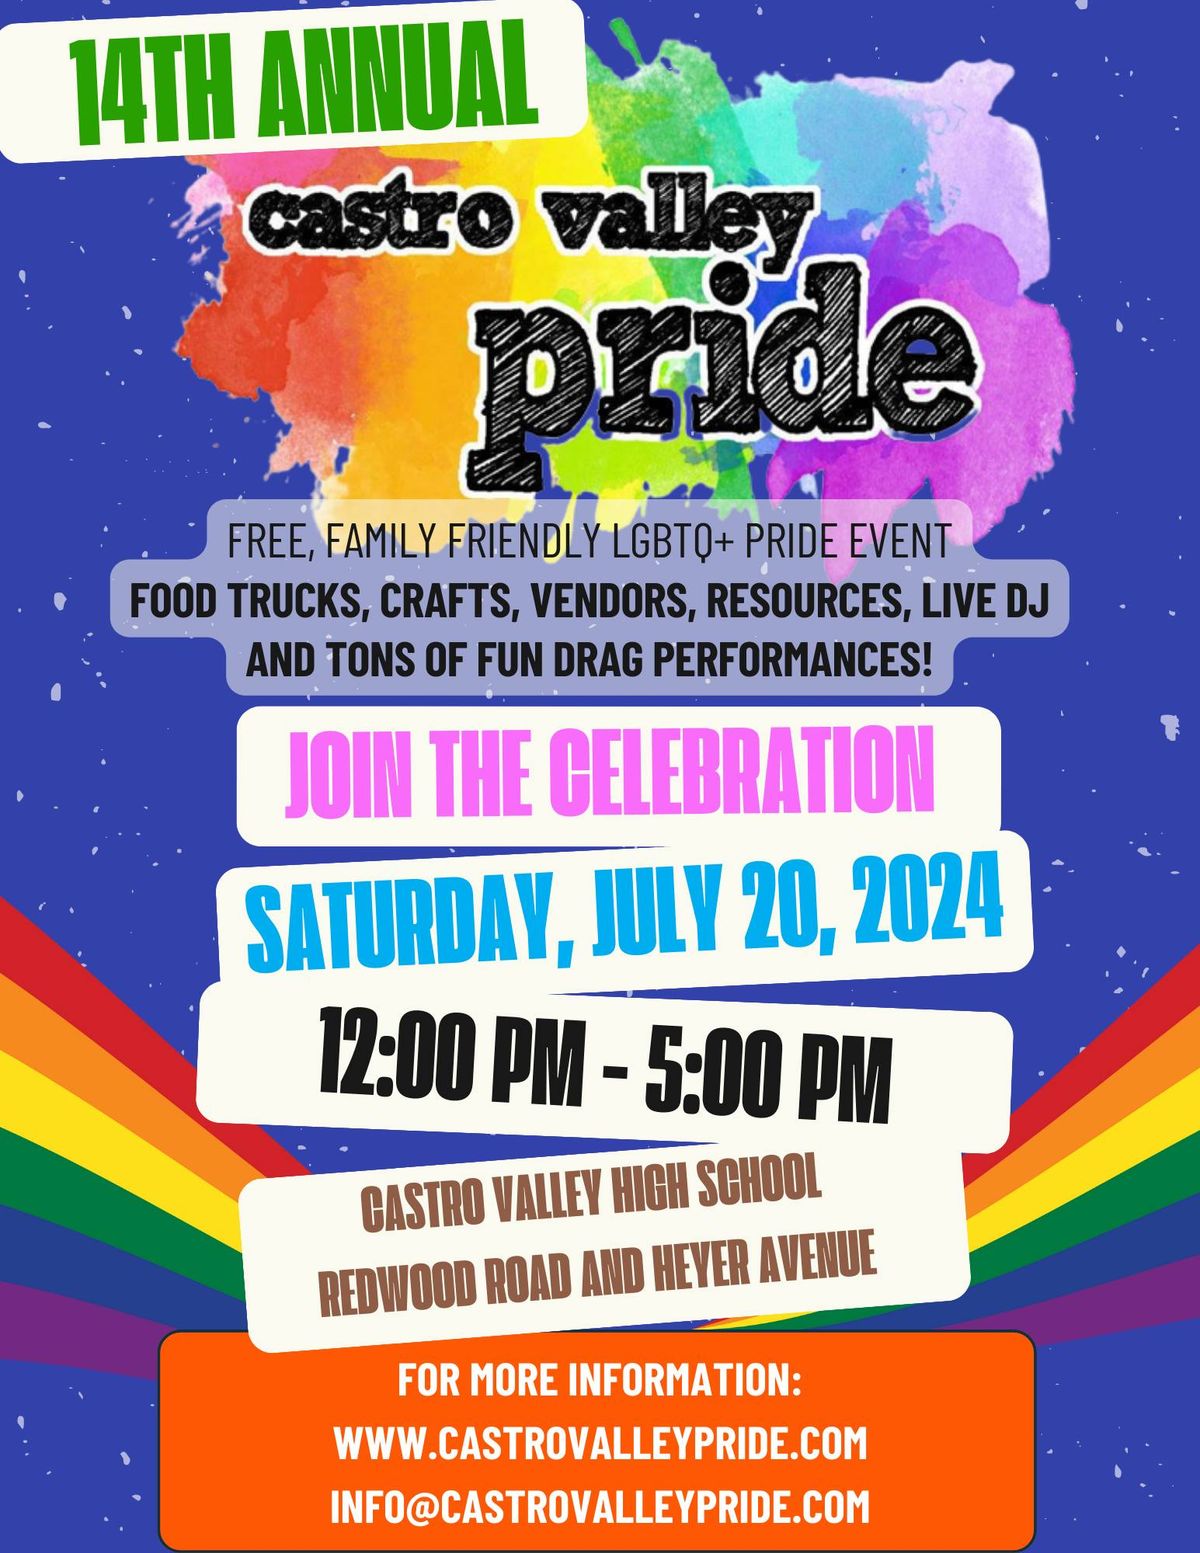 14th Annual Castro Valley Pride